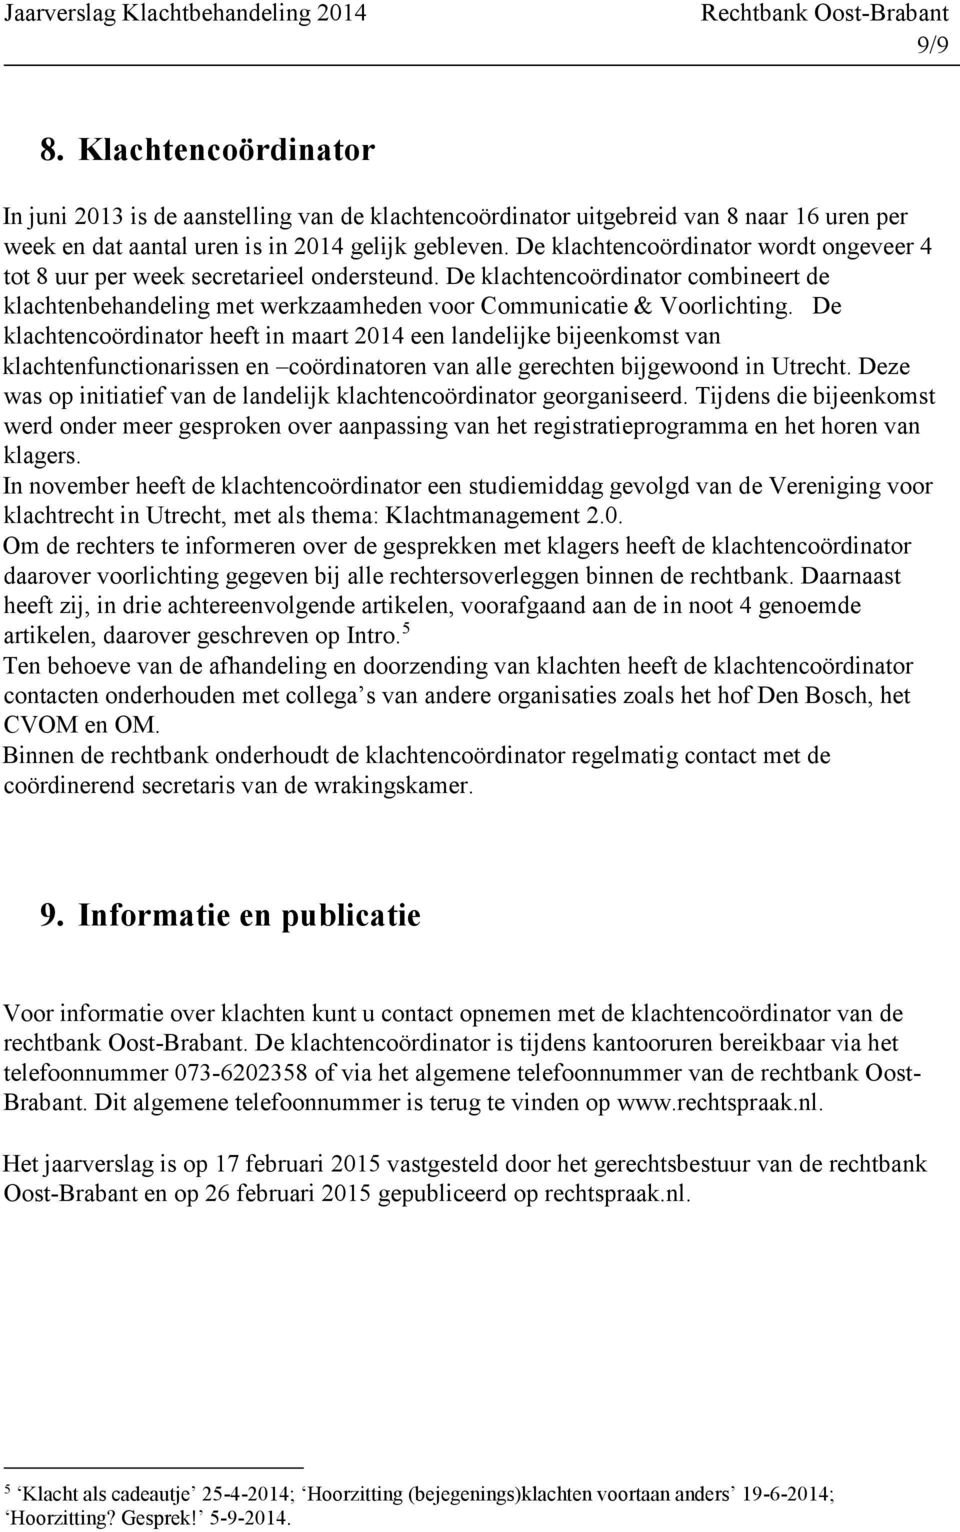 De klachtencoördinator heeft in maart 2014 een landelijke bijeenkomst van klachtenfunctionarissen en coördinatoren van alle gerechten bijgewoond in Utrecht.